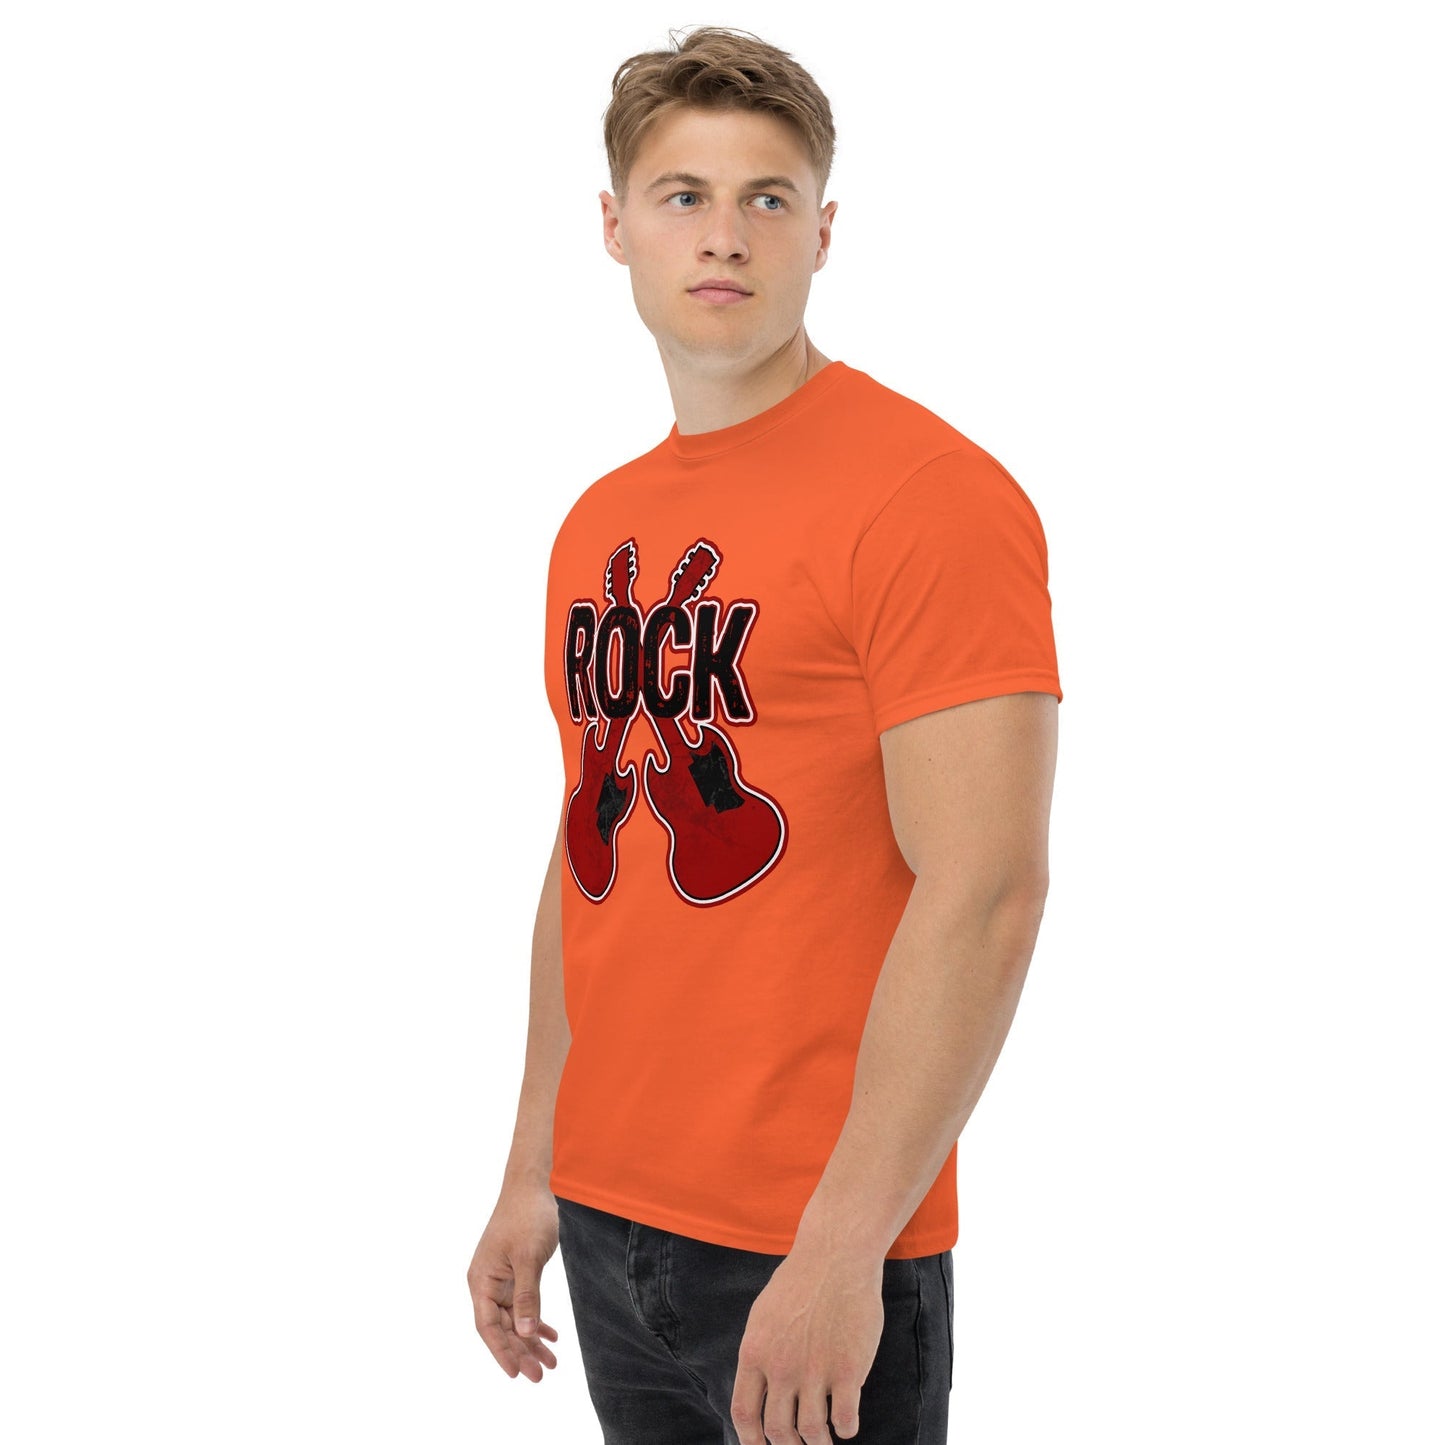 Rock Guitars Musician T-Shirt